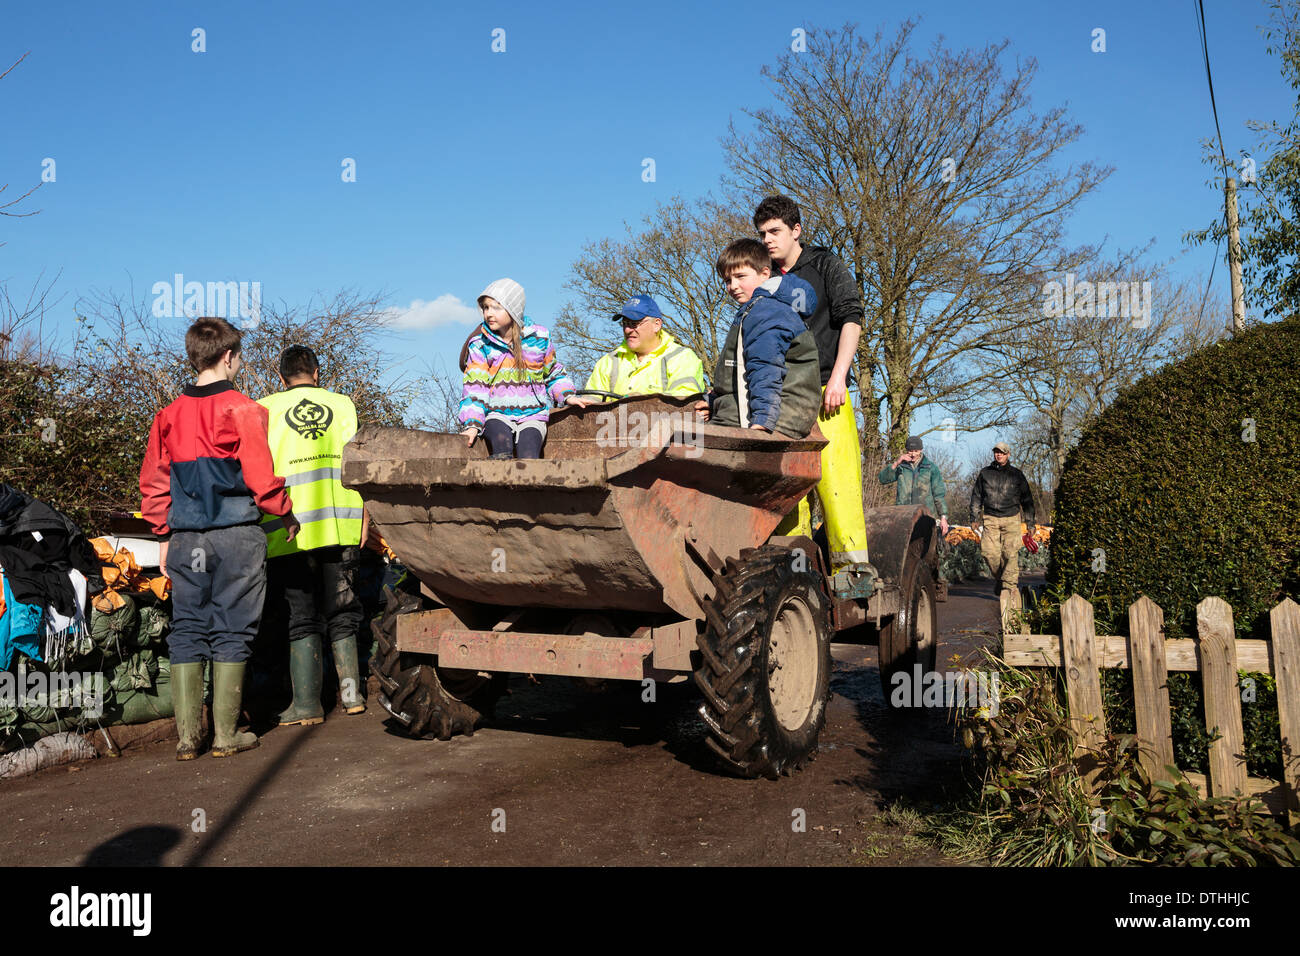 Los trabajadores de ayuda de voluntarios ayudan a distribuir suministros en la villa inundada de páramos en los niveles de Somerset. Foto de stock